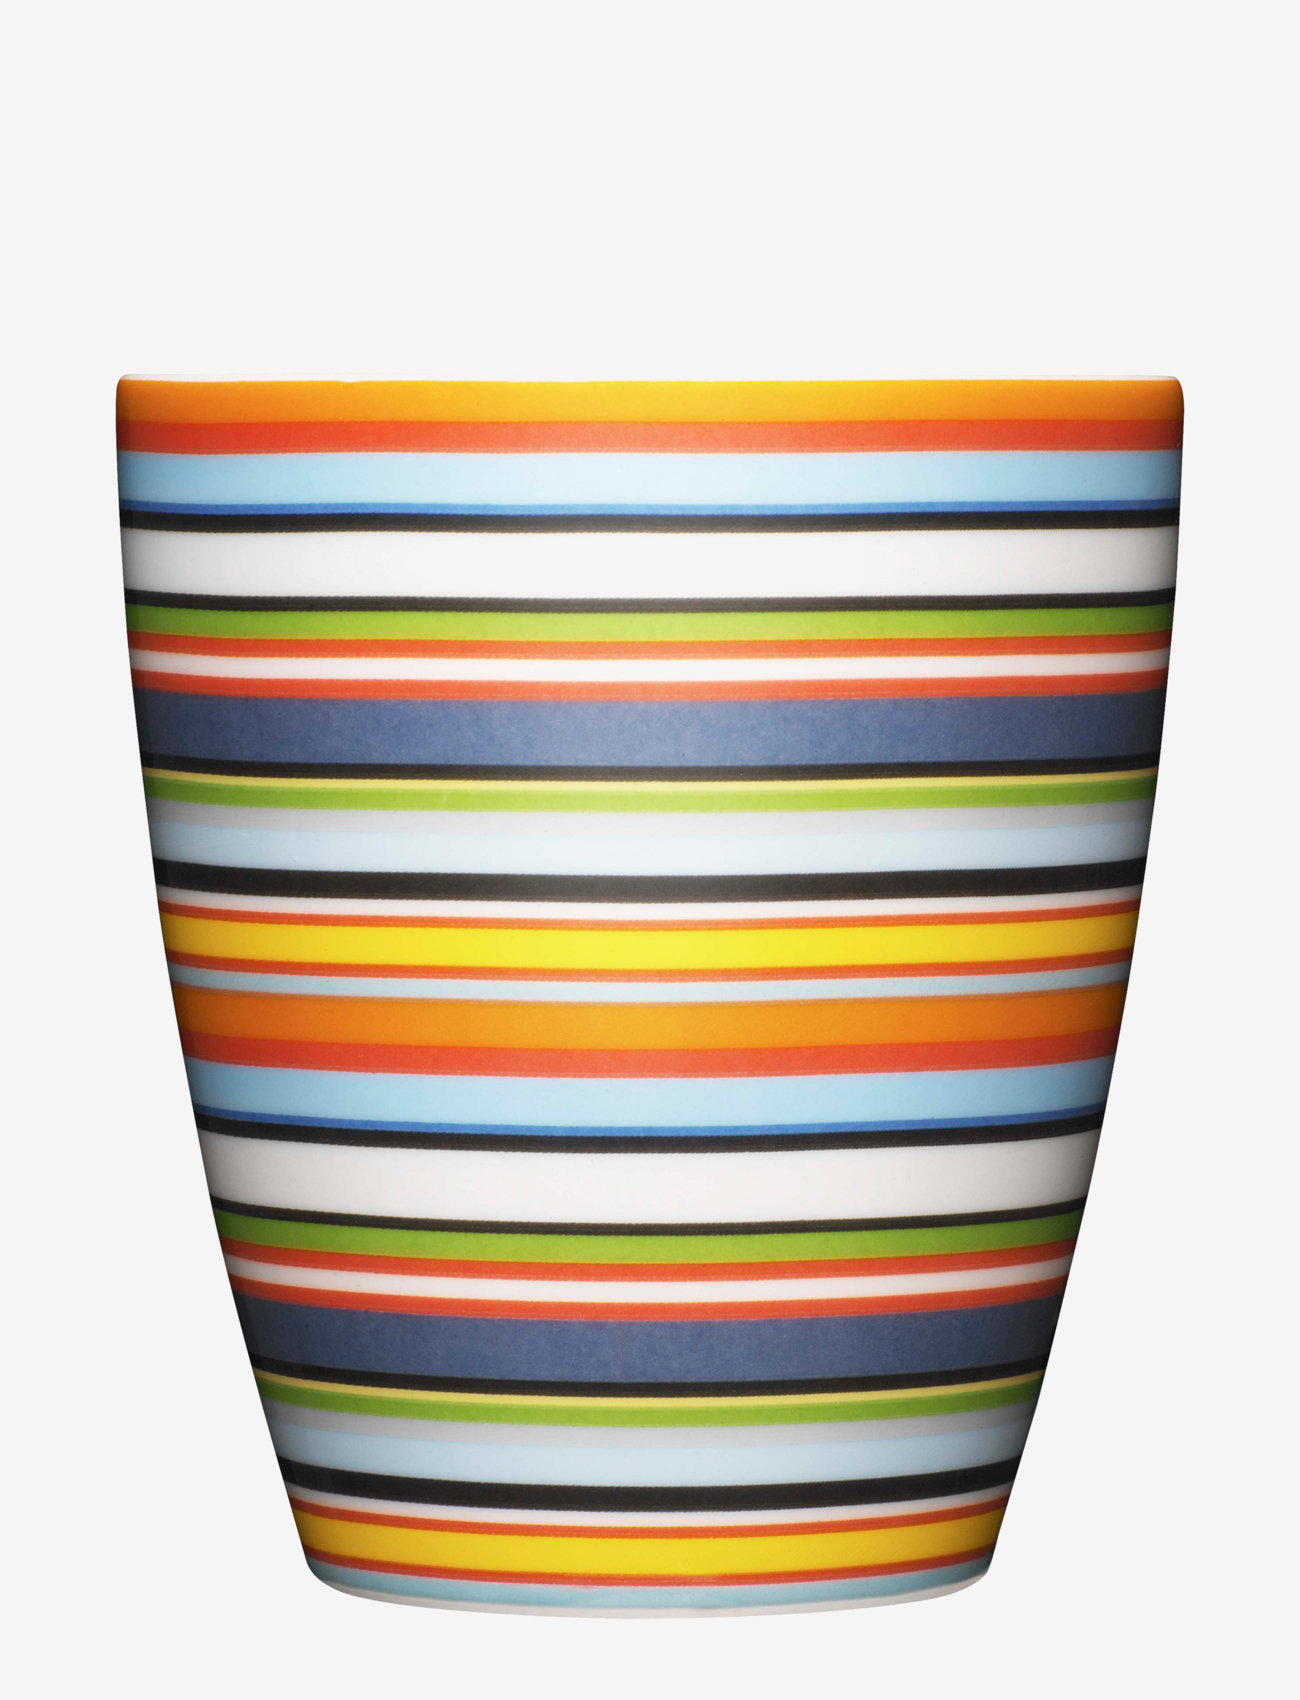 Iittala - Origo mug 0,25L - laagste prijzen - orange - 0